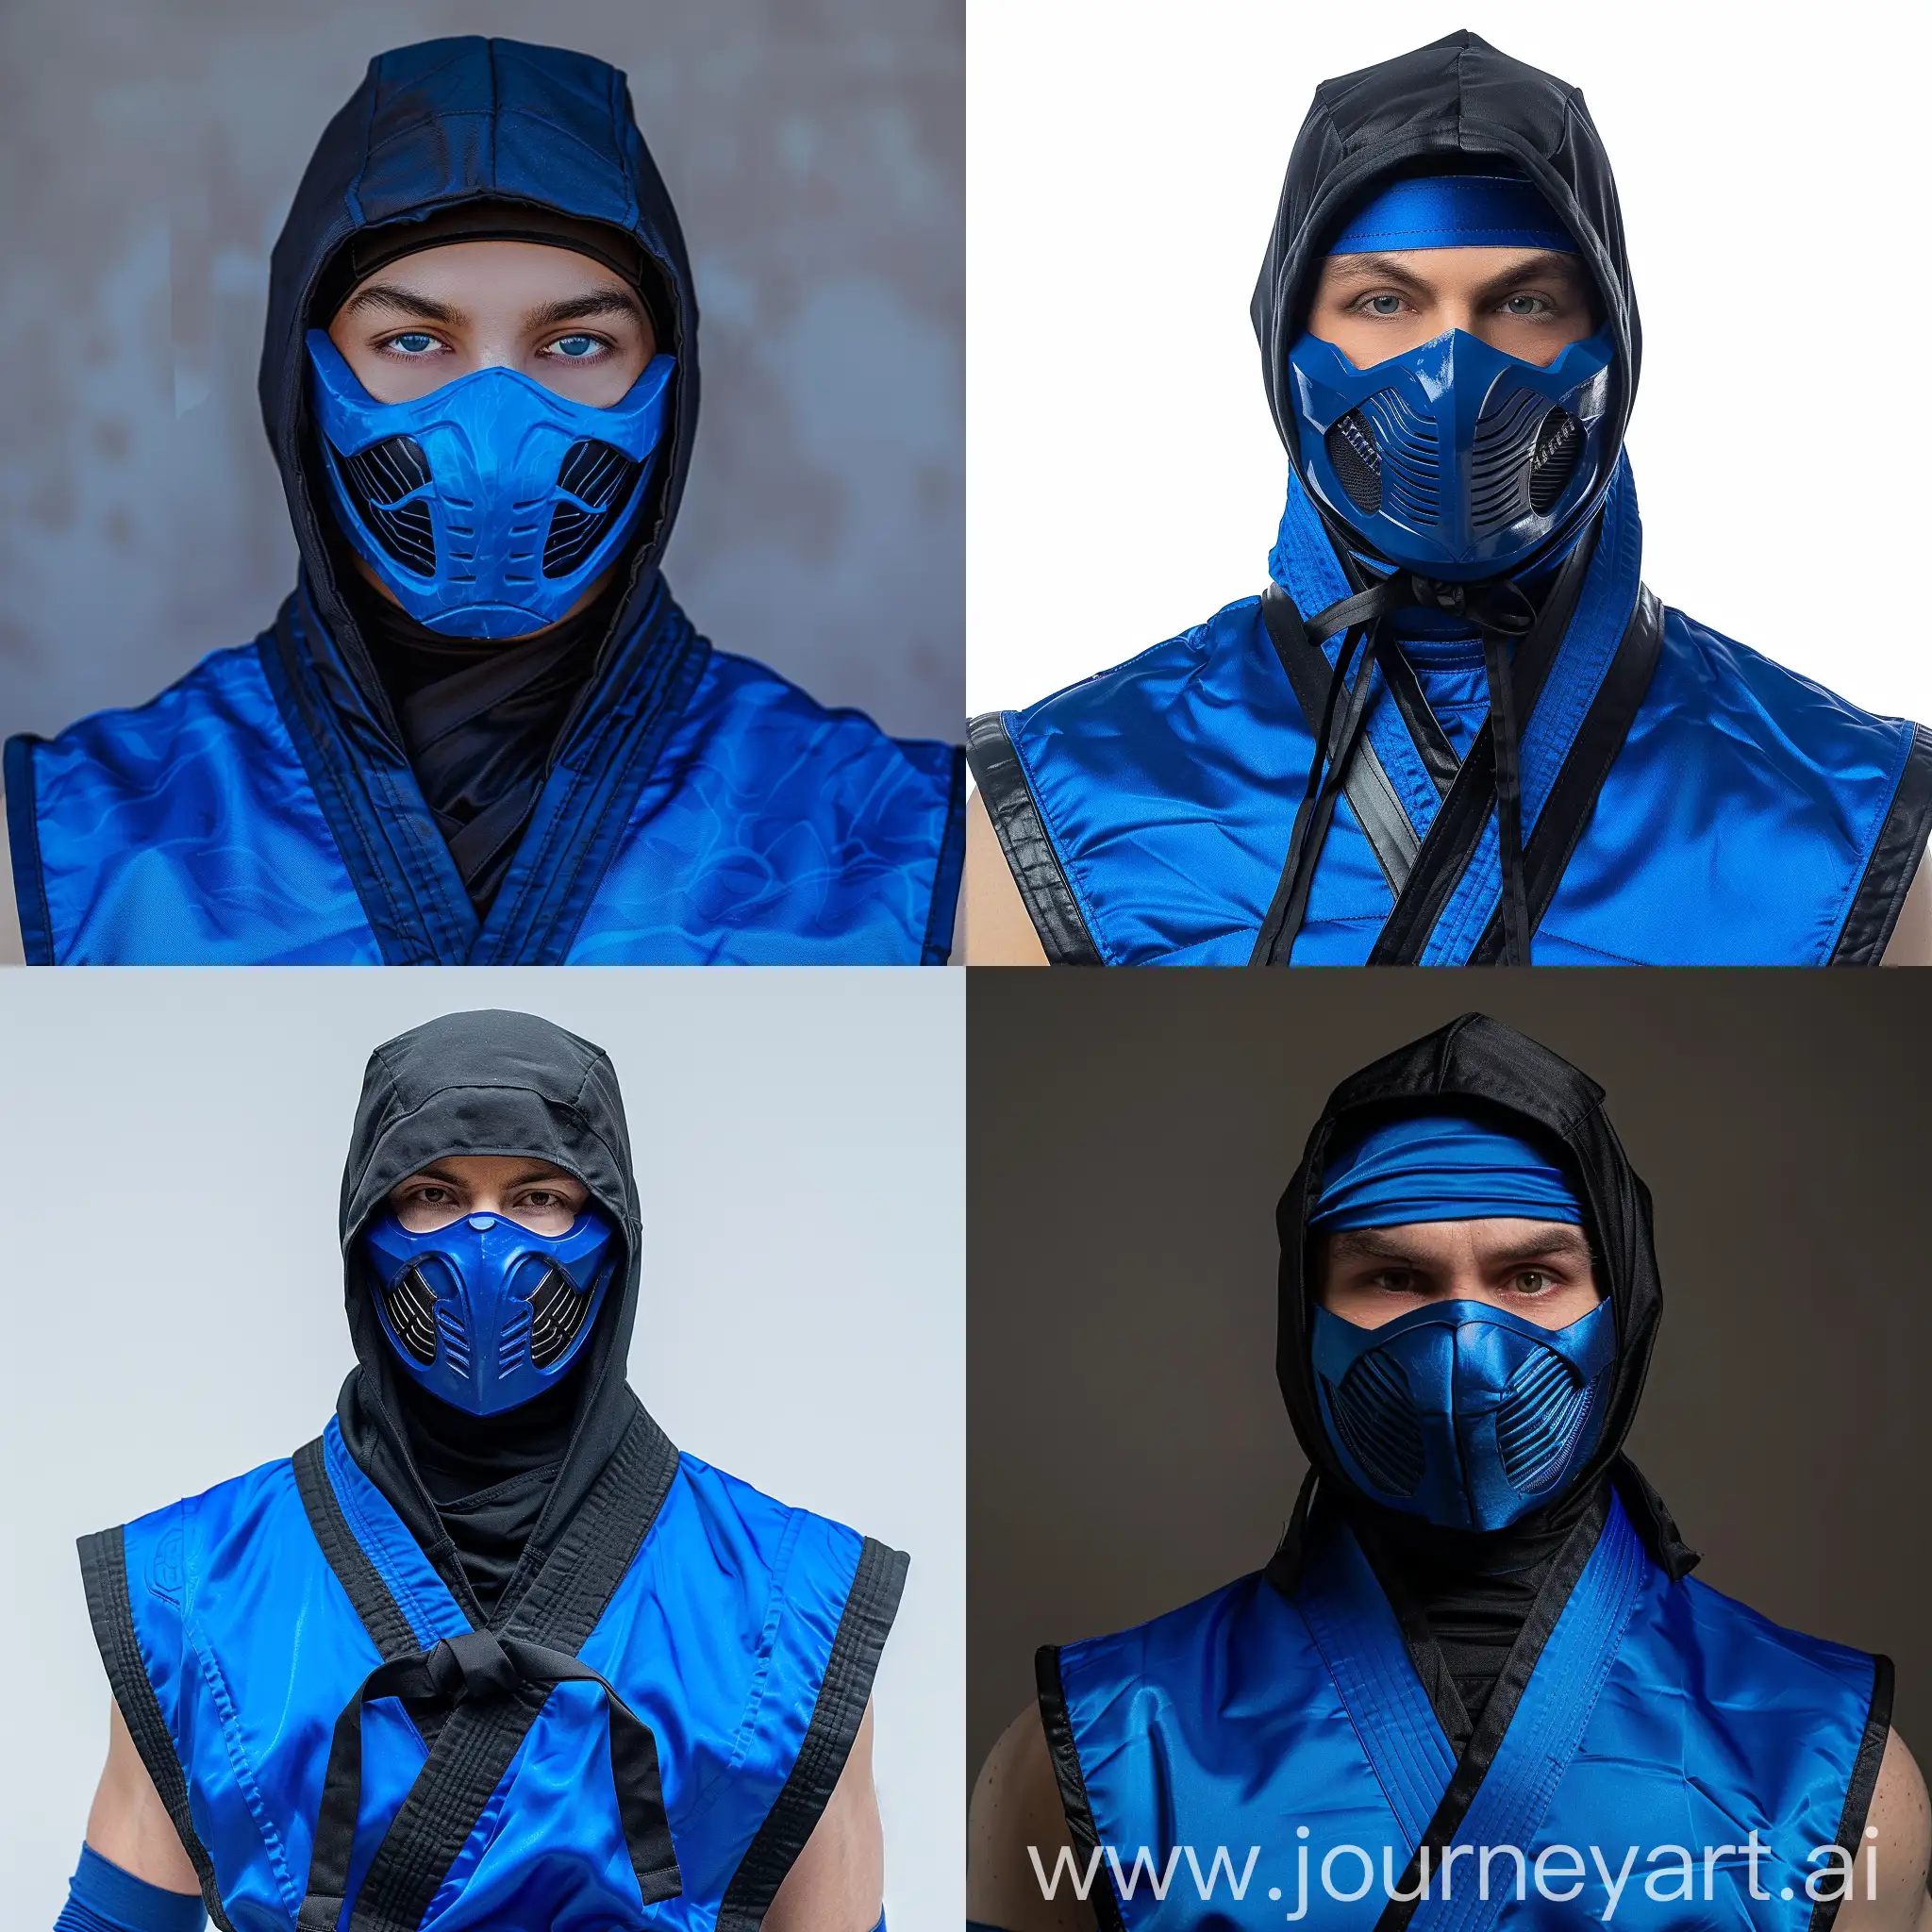 SubZero-Mortal-Kombat-1-Fan-Art-Iconic-Blue-Ninja-Costume-with-Mask-and-Hood